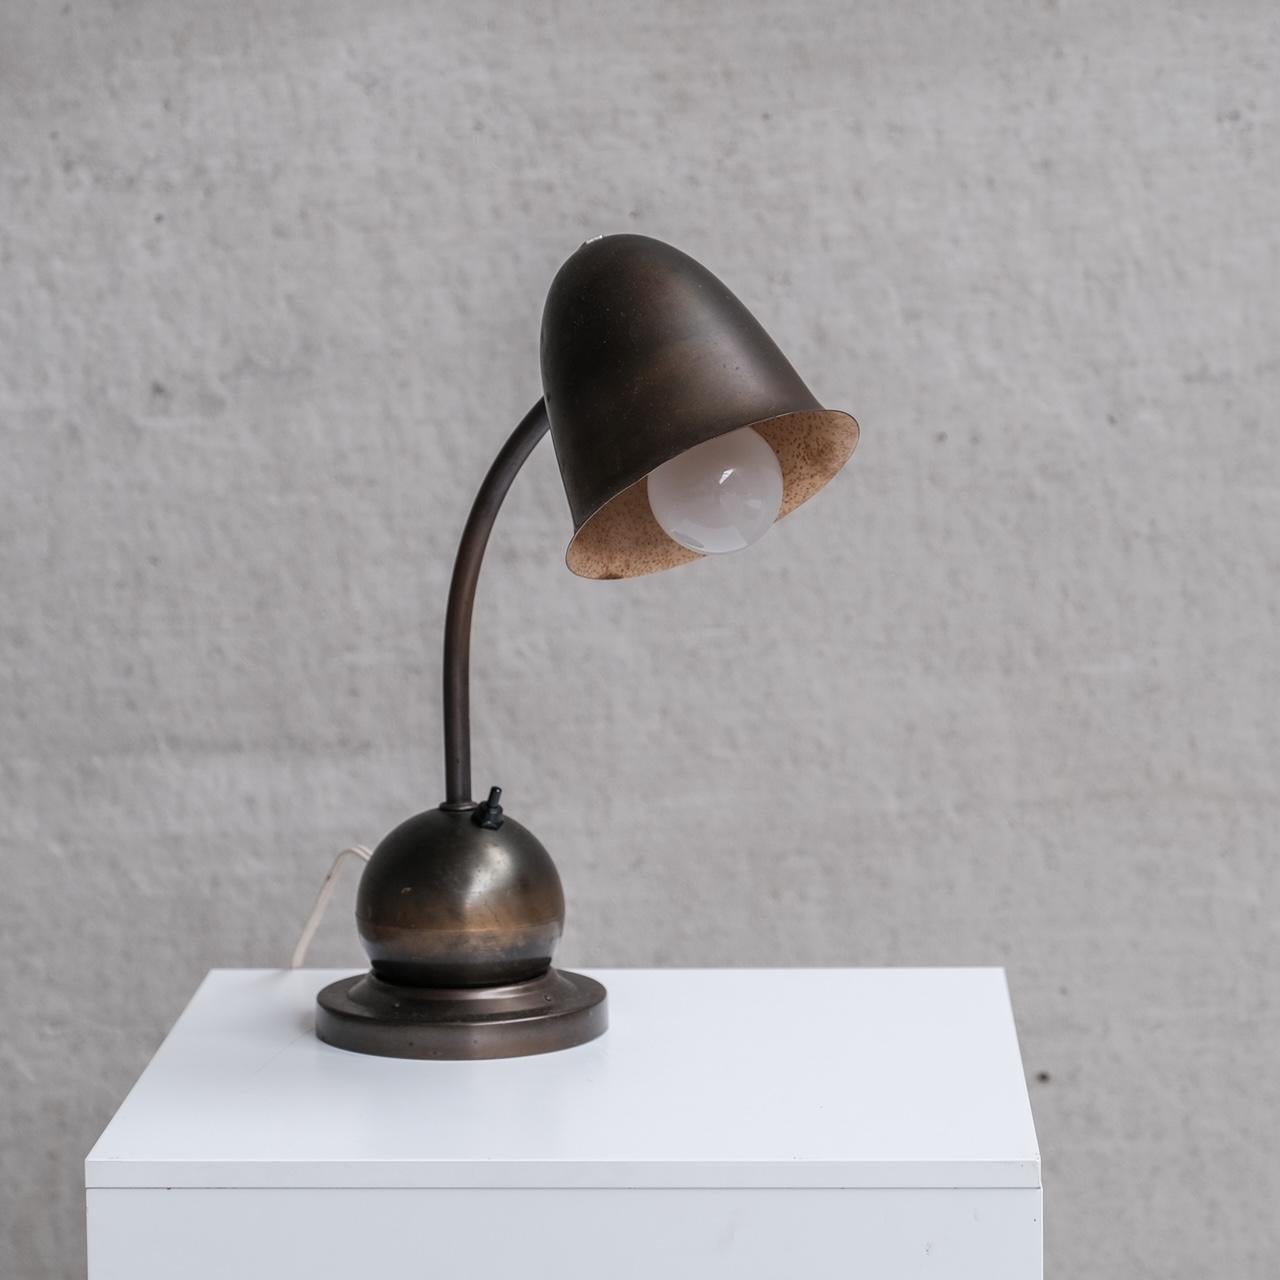 Une lampe de table de qualité rare par W.H. Gispen pour Daalderop.

Hollande, c1930s.

La lourde boule en laiton repose simplement sur le rebord de la base en laiton.

La lampe peut donc tourner et se déplacer librement.

Laiton peint.

Depuis le